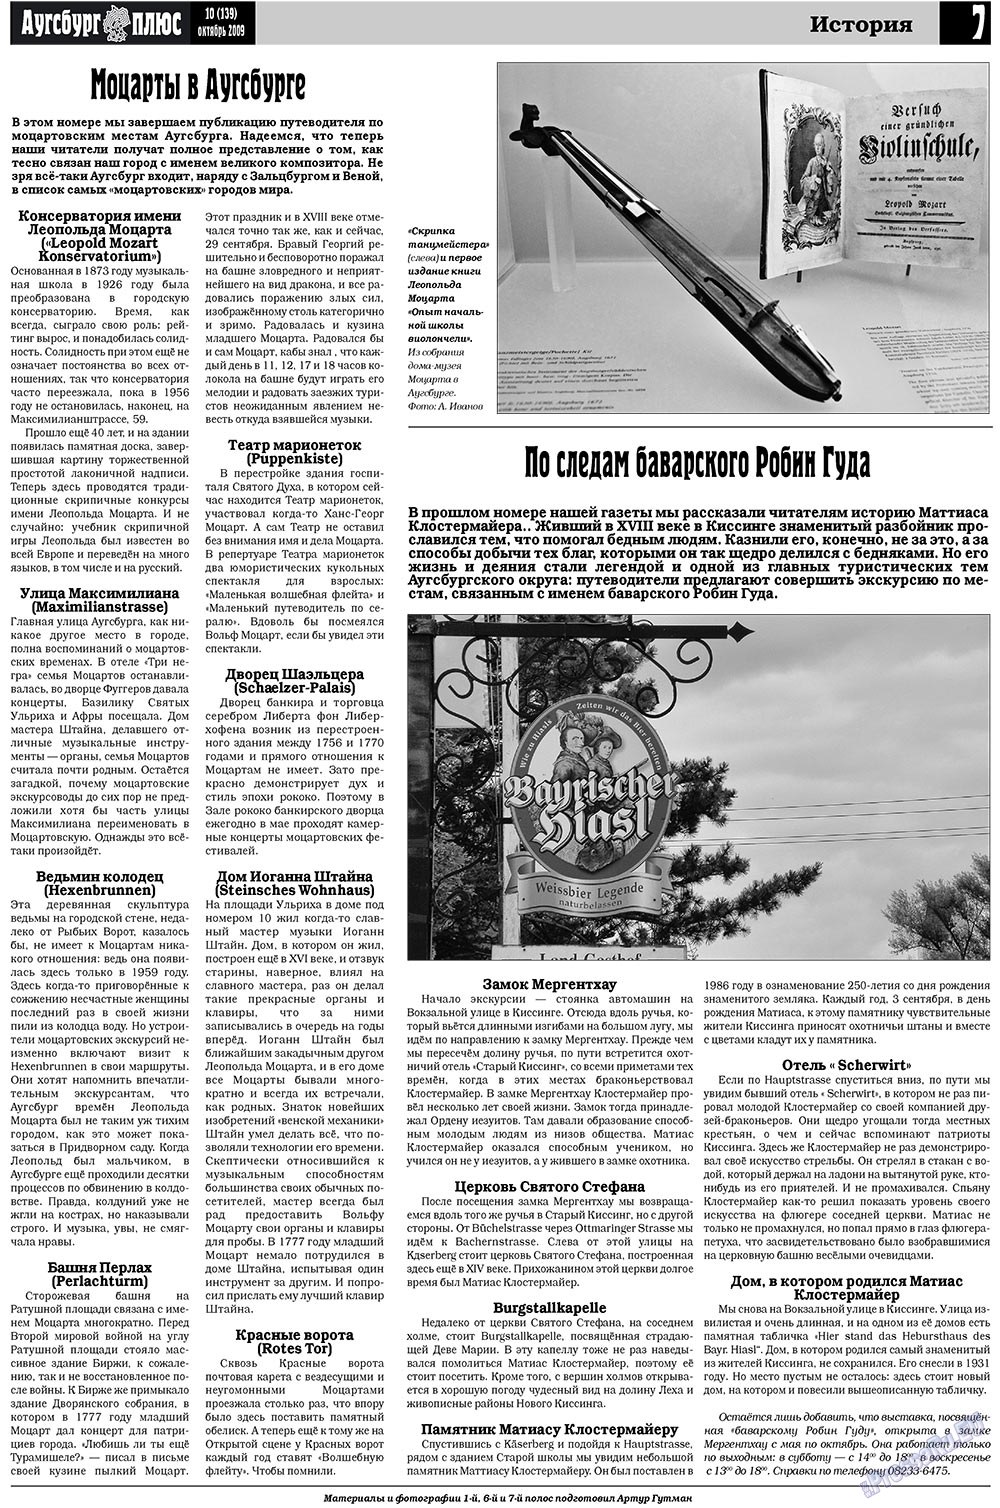 Германия плюс, газета. 2009 №10 стр.23